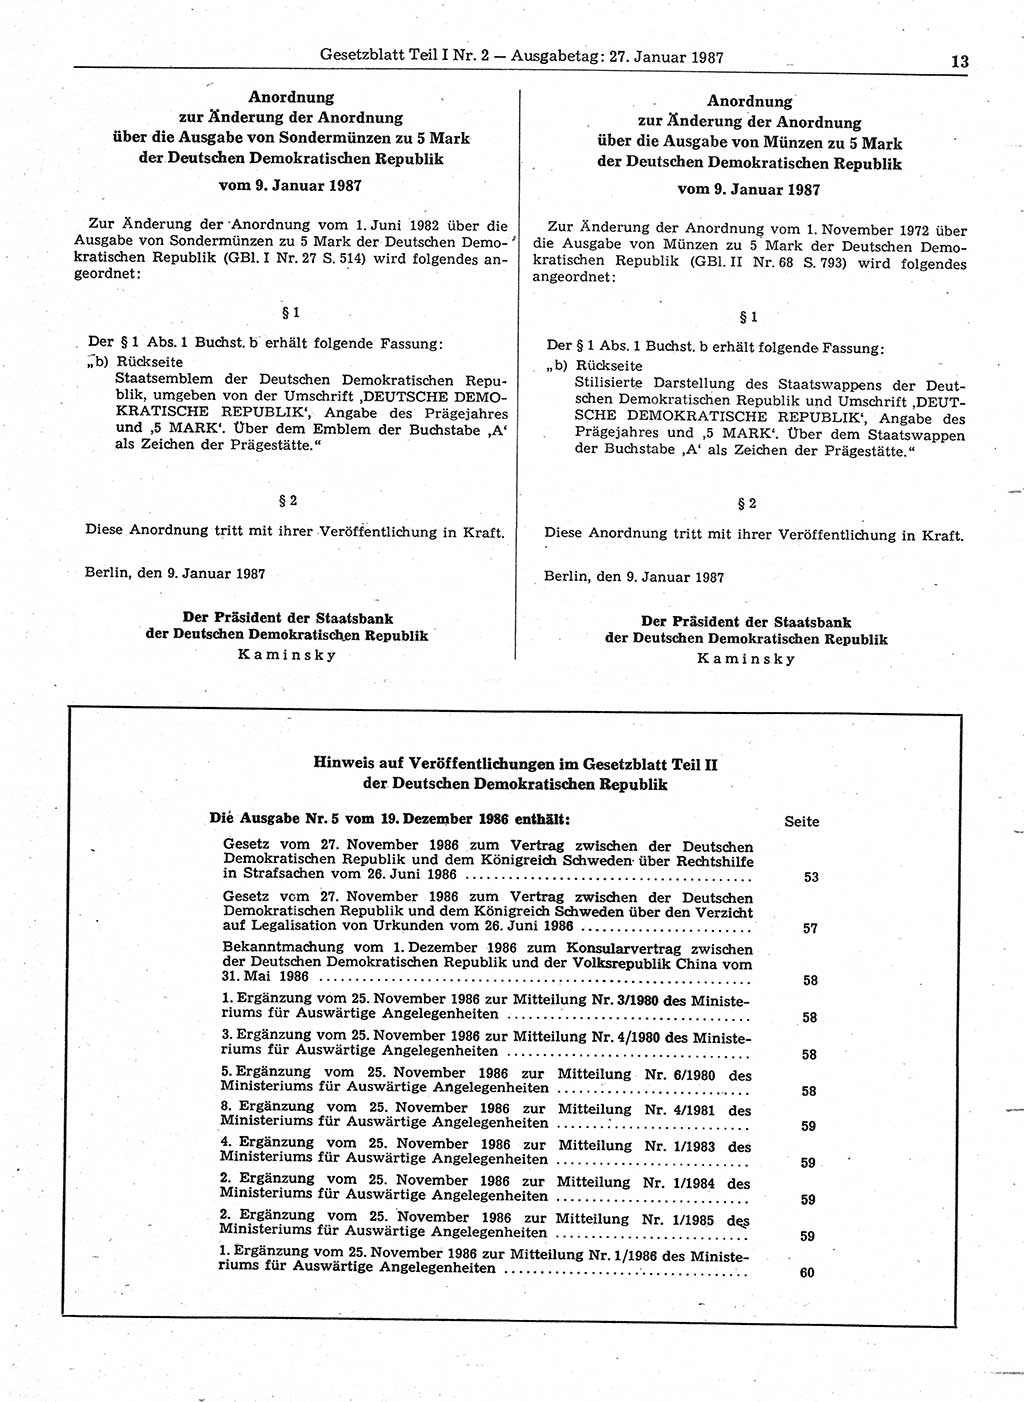 Gesetzblatt (GBl.) der Deutschen Demokratischen Republik (DDR) Teil Ⅰ 1987, Seite 13 (GBl. DDR Ⅰ 1987, S. 13)